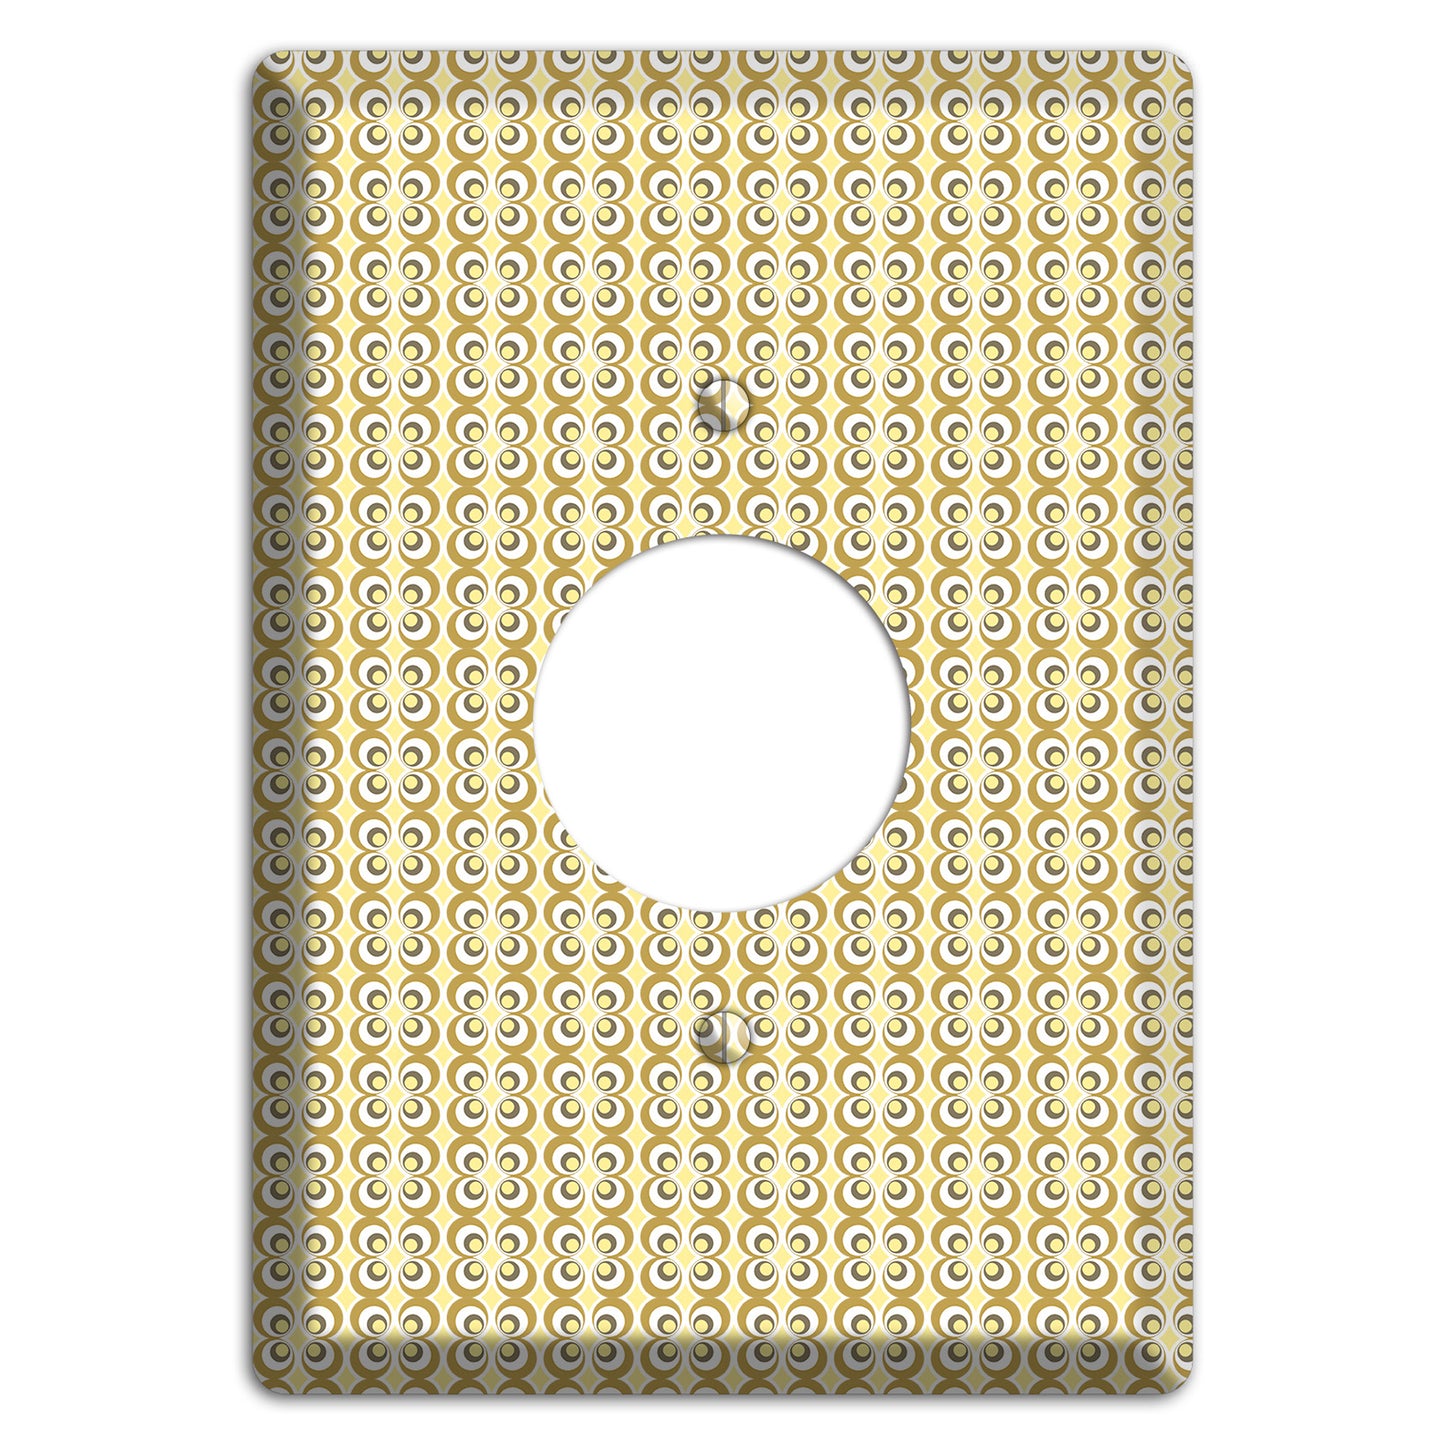 Yellow Offset Bullseye Single Receptacle Wallplate